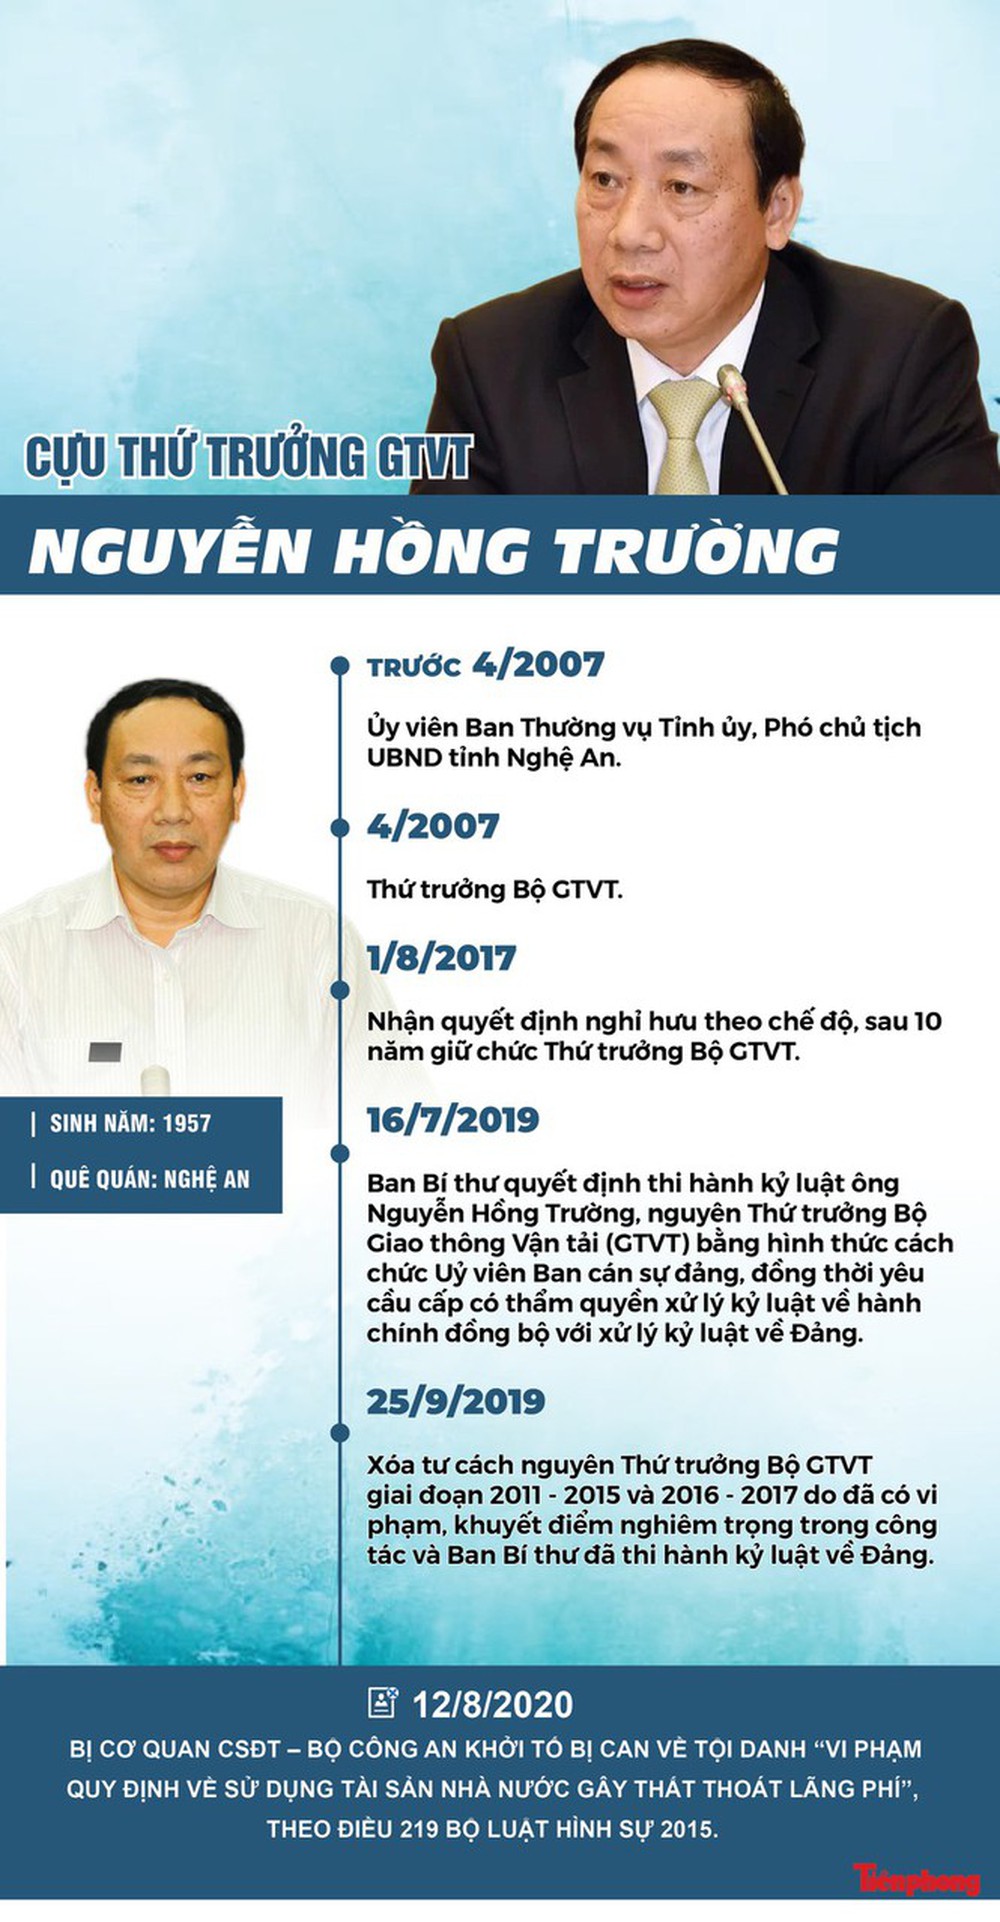 Di lý cựu Bộ trưởng Đinh La Thăng, Út ‘trọc’ vào TPHCM - Ảnh 2.